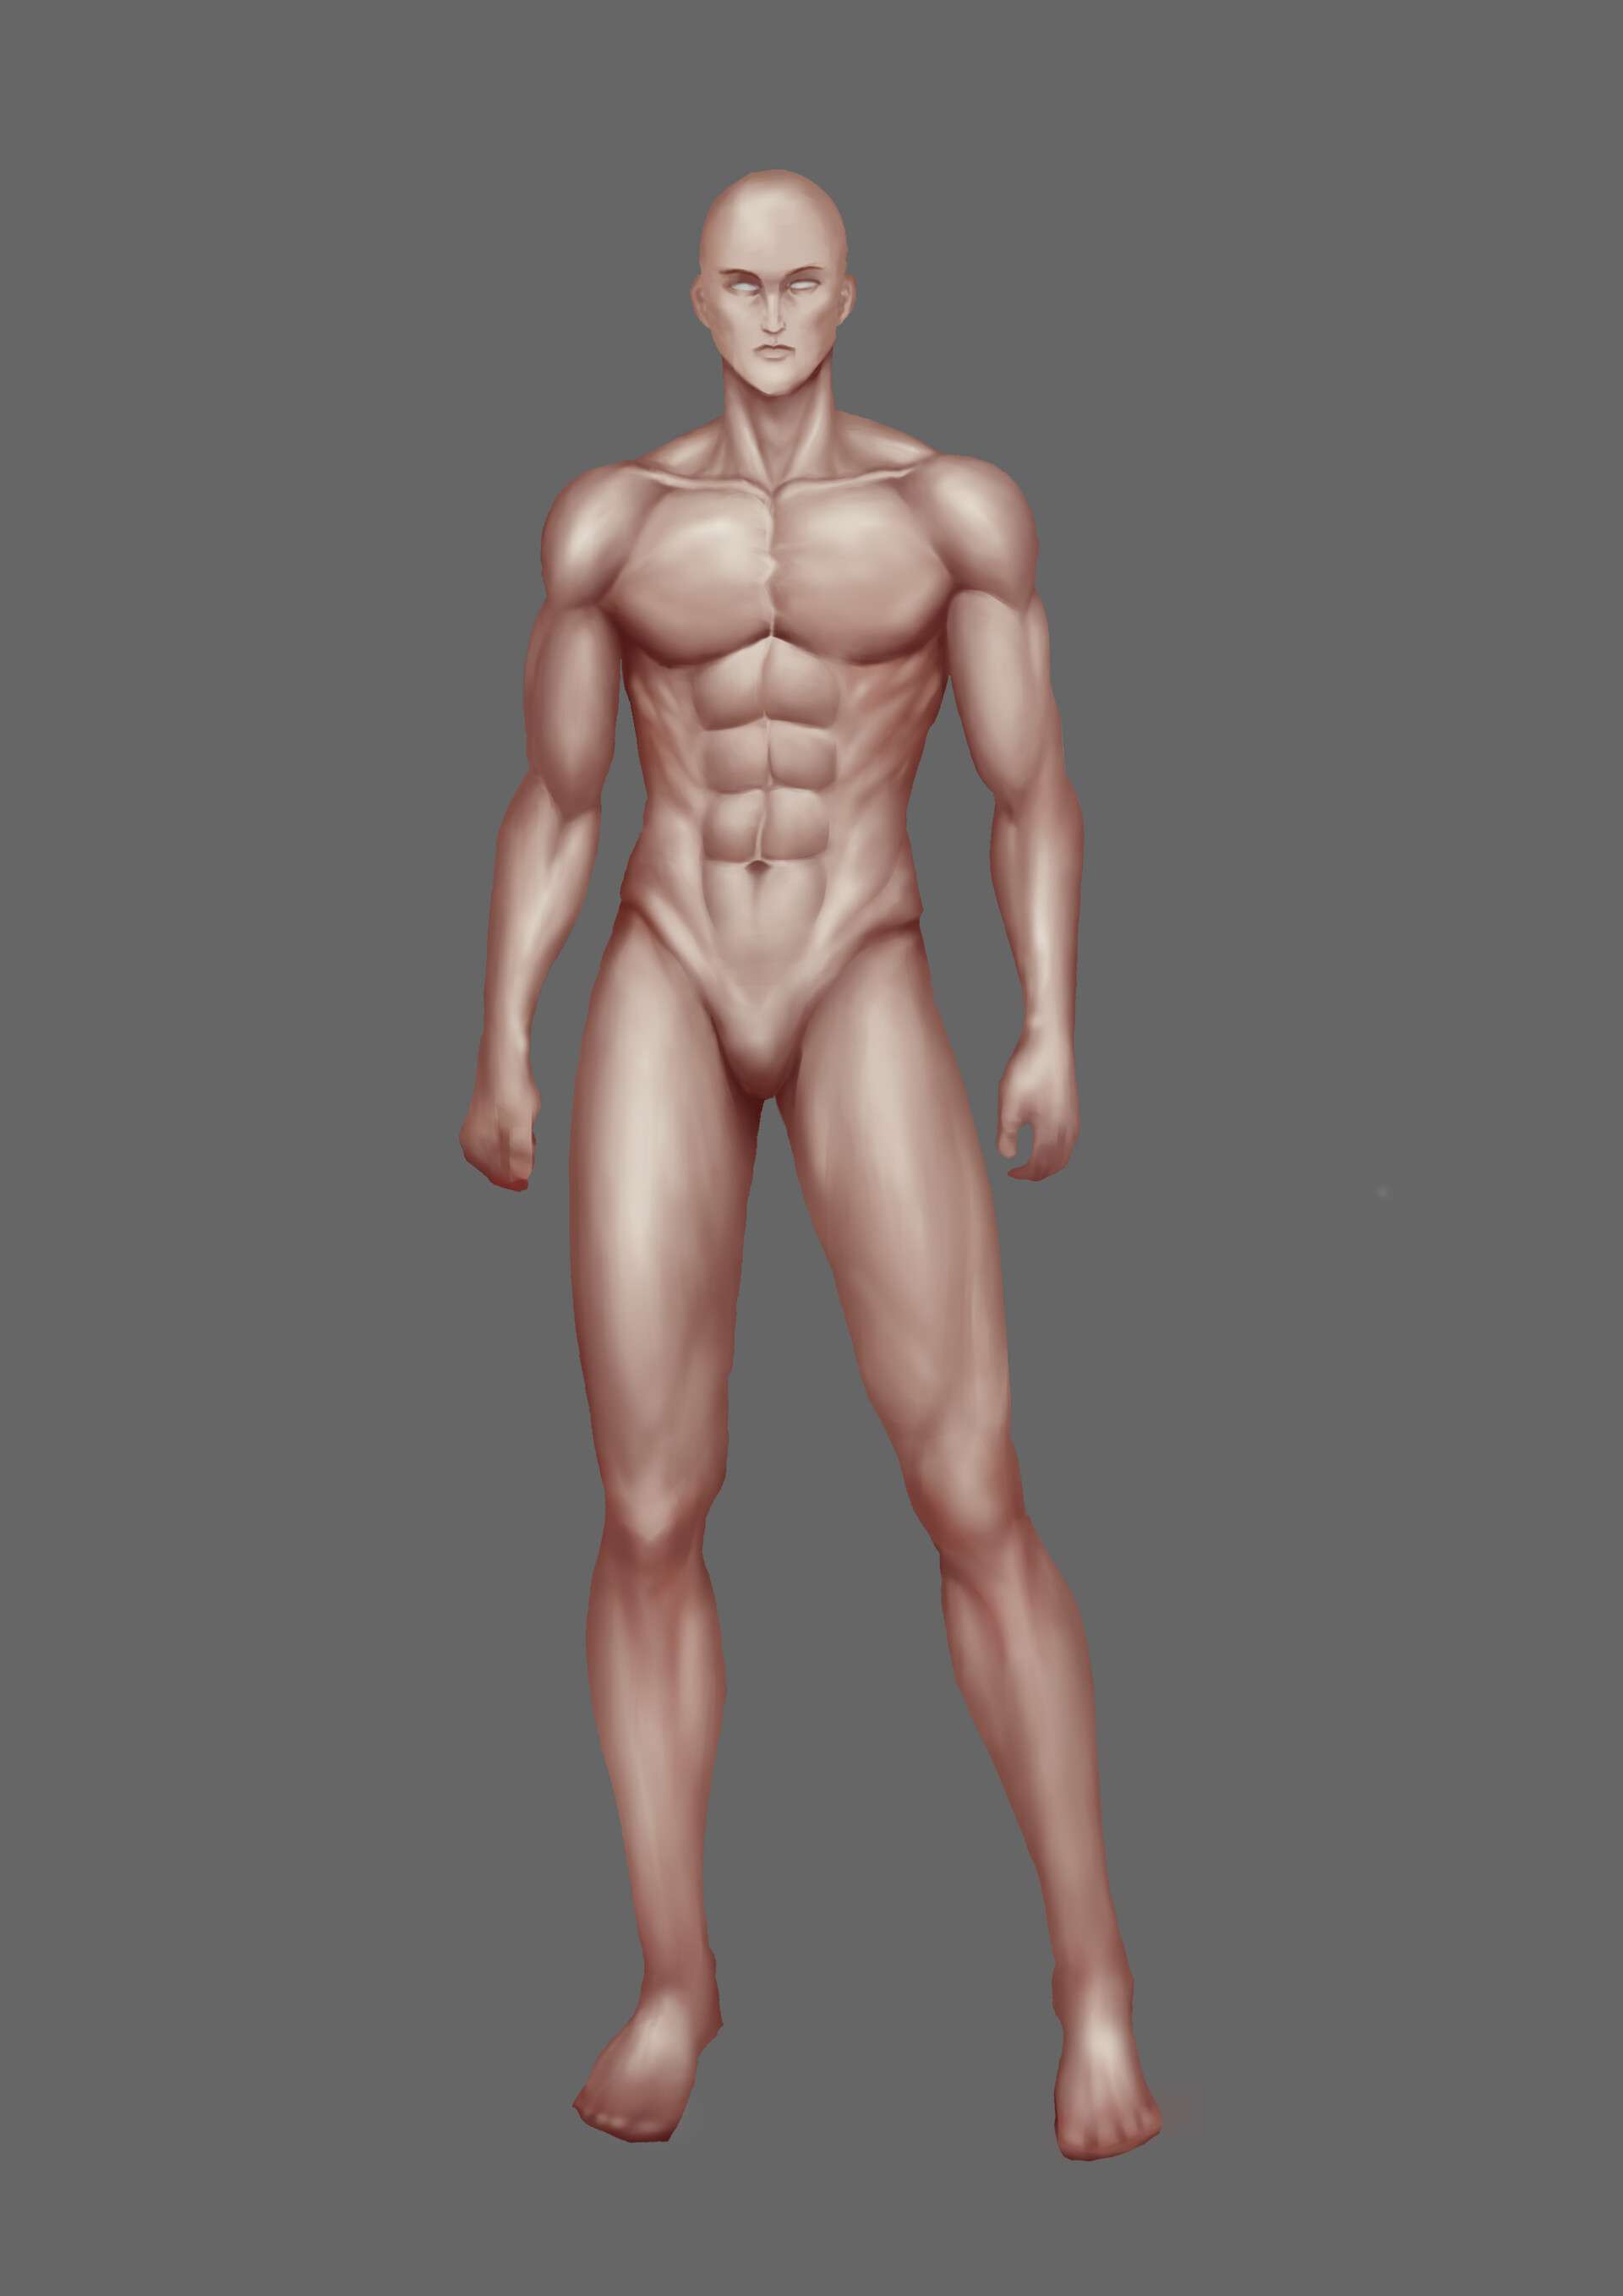 男性完整人体肌肉绘画素材